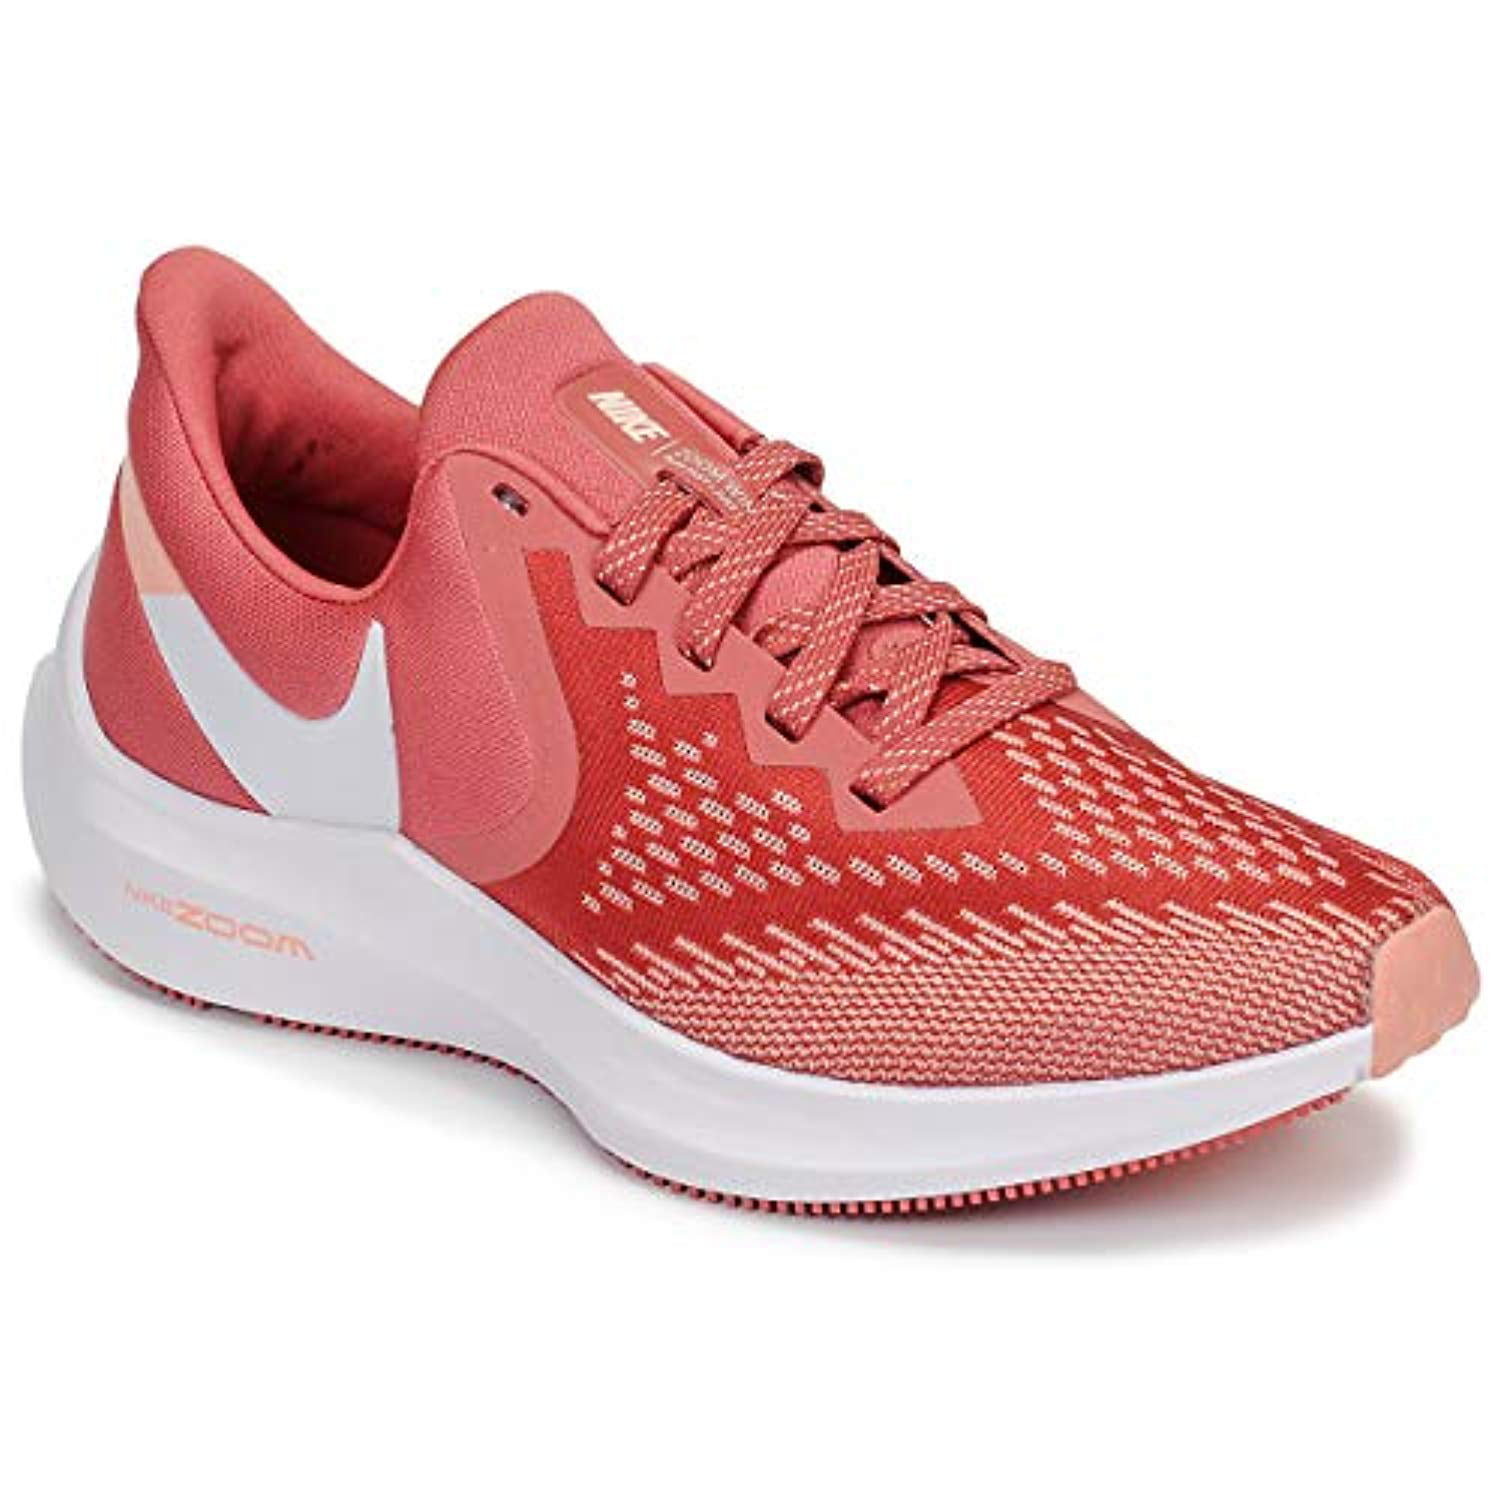 ventilatie Overweldigend ondergeschikt Nike Zoom Winflo 6 Lightweight Running Shoe - Women's (8.5, Clay Red/White)  - Walmart.com